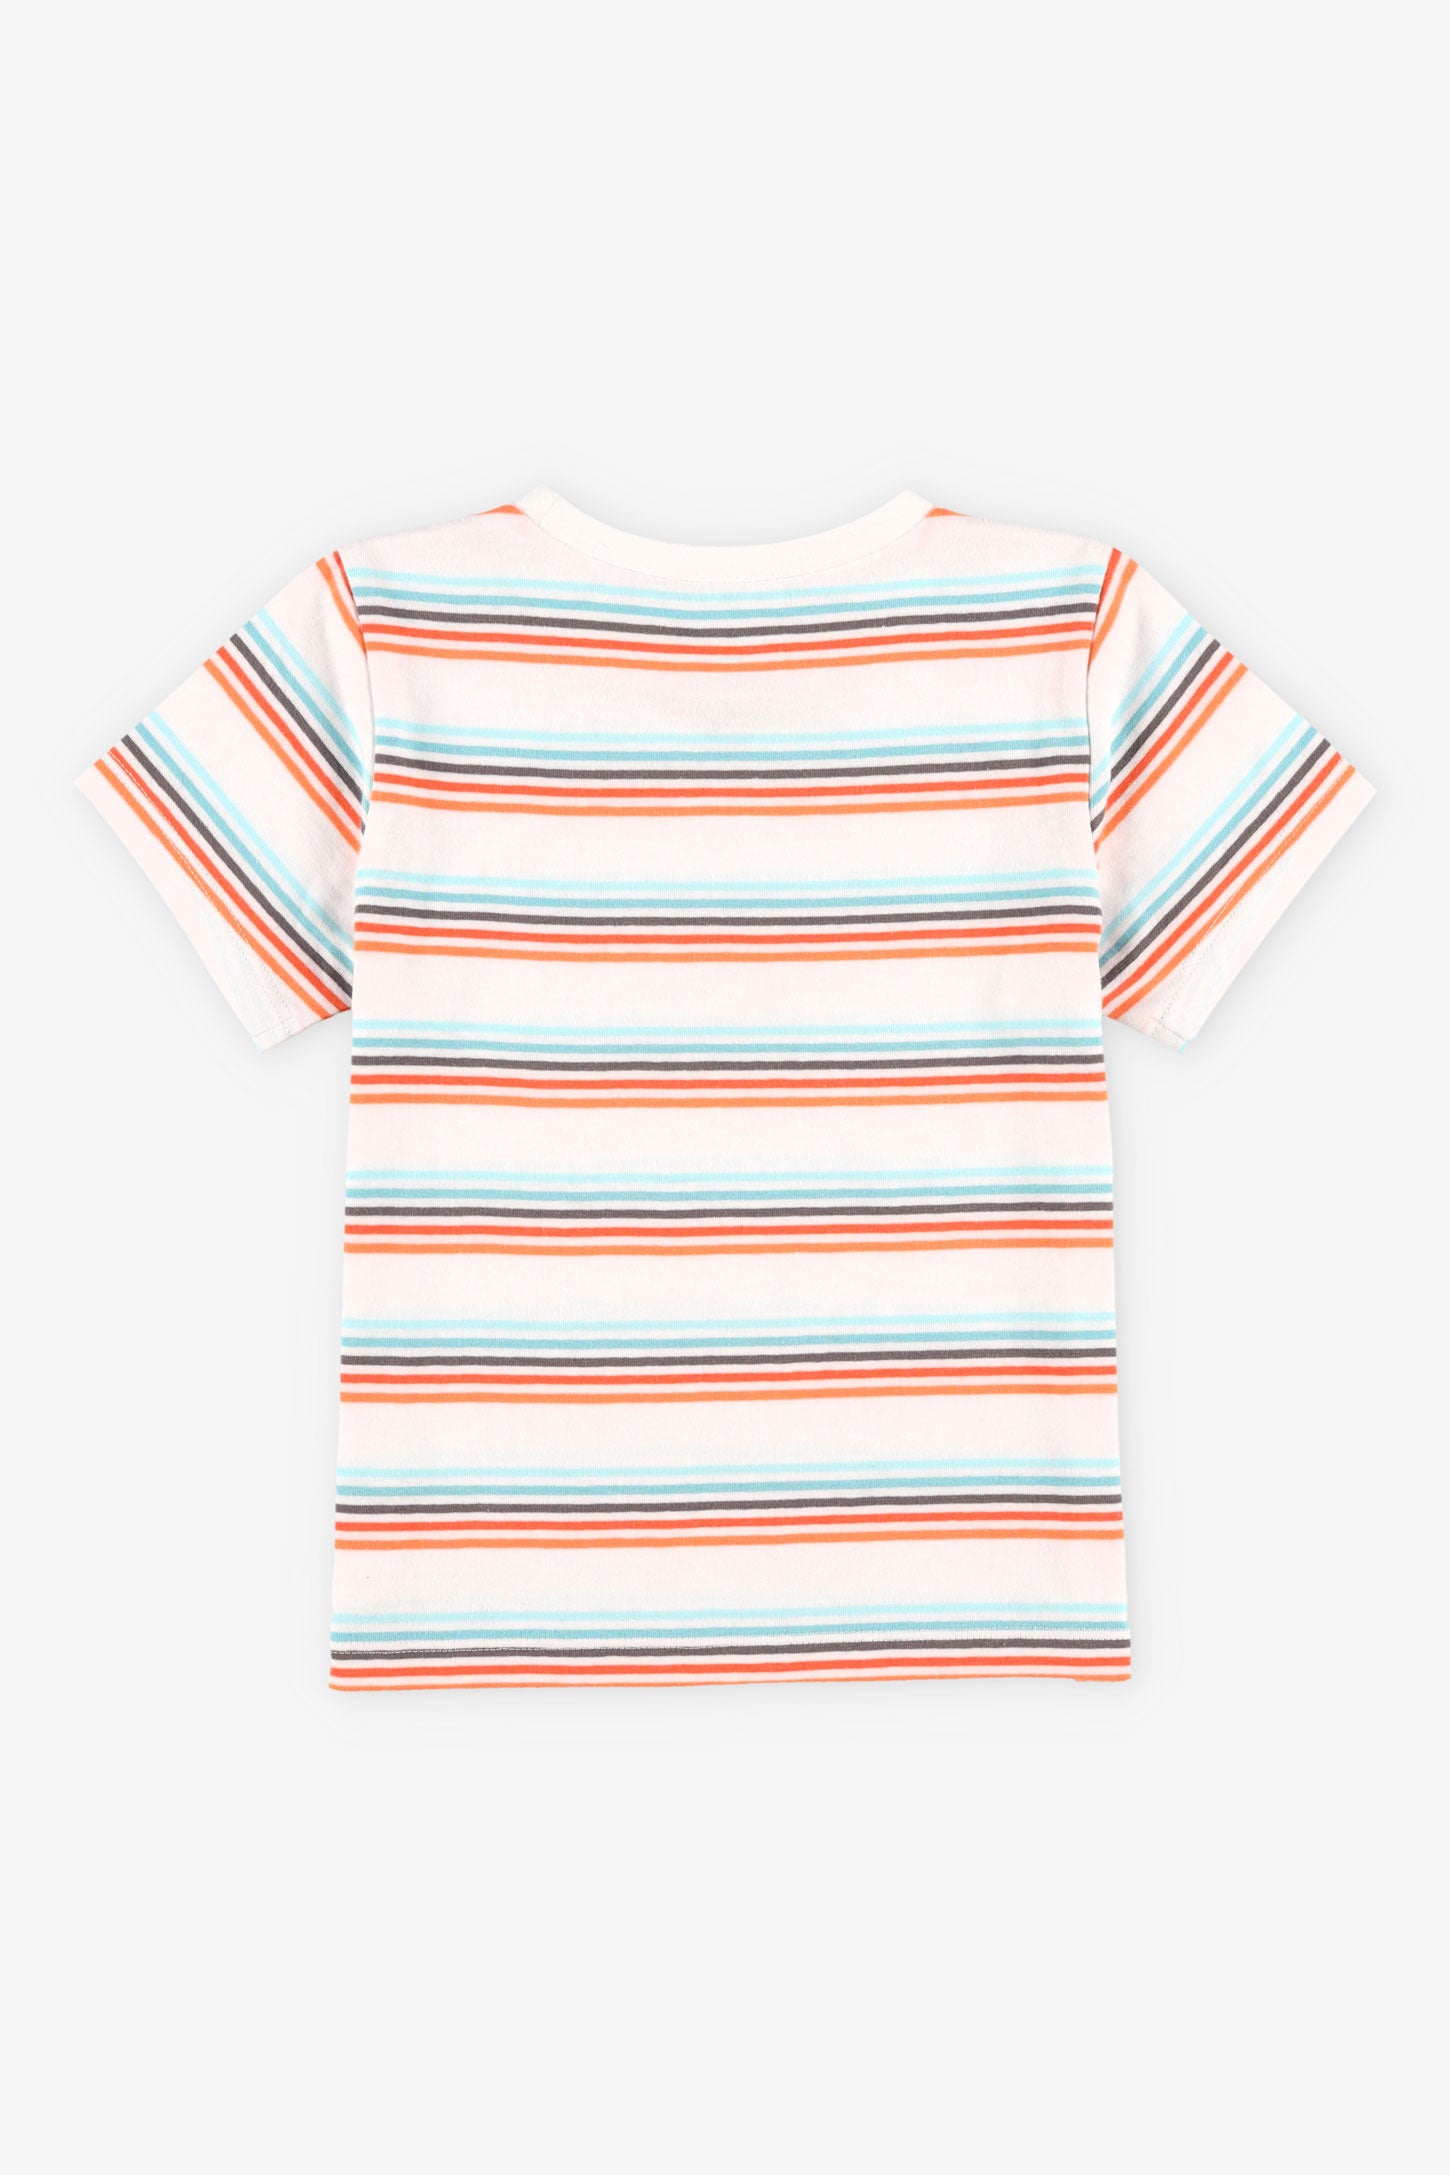 T-shirt col rond à imprimé coton, 2T-3T, 2/15$ - Bébé garçon && BLANC MULTI